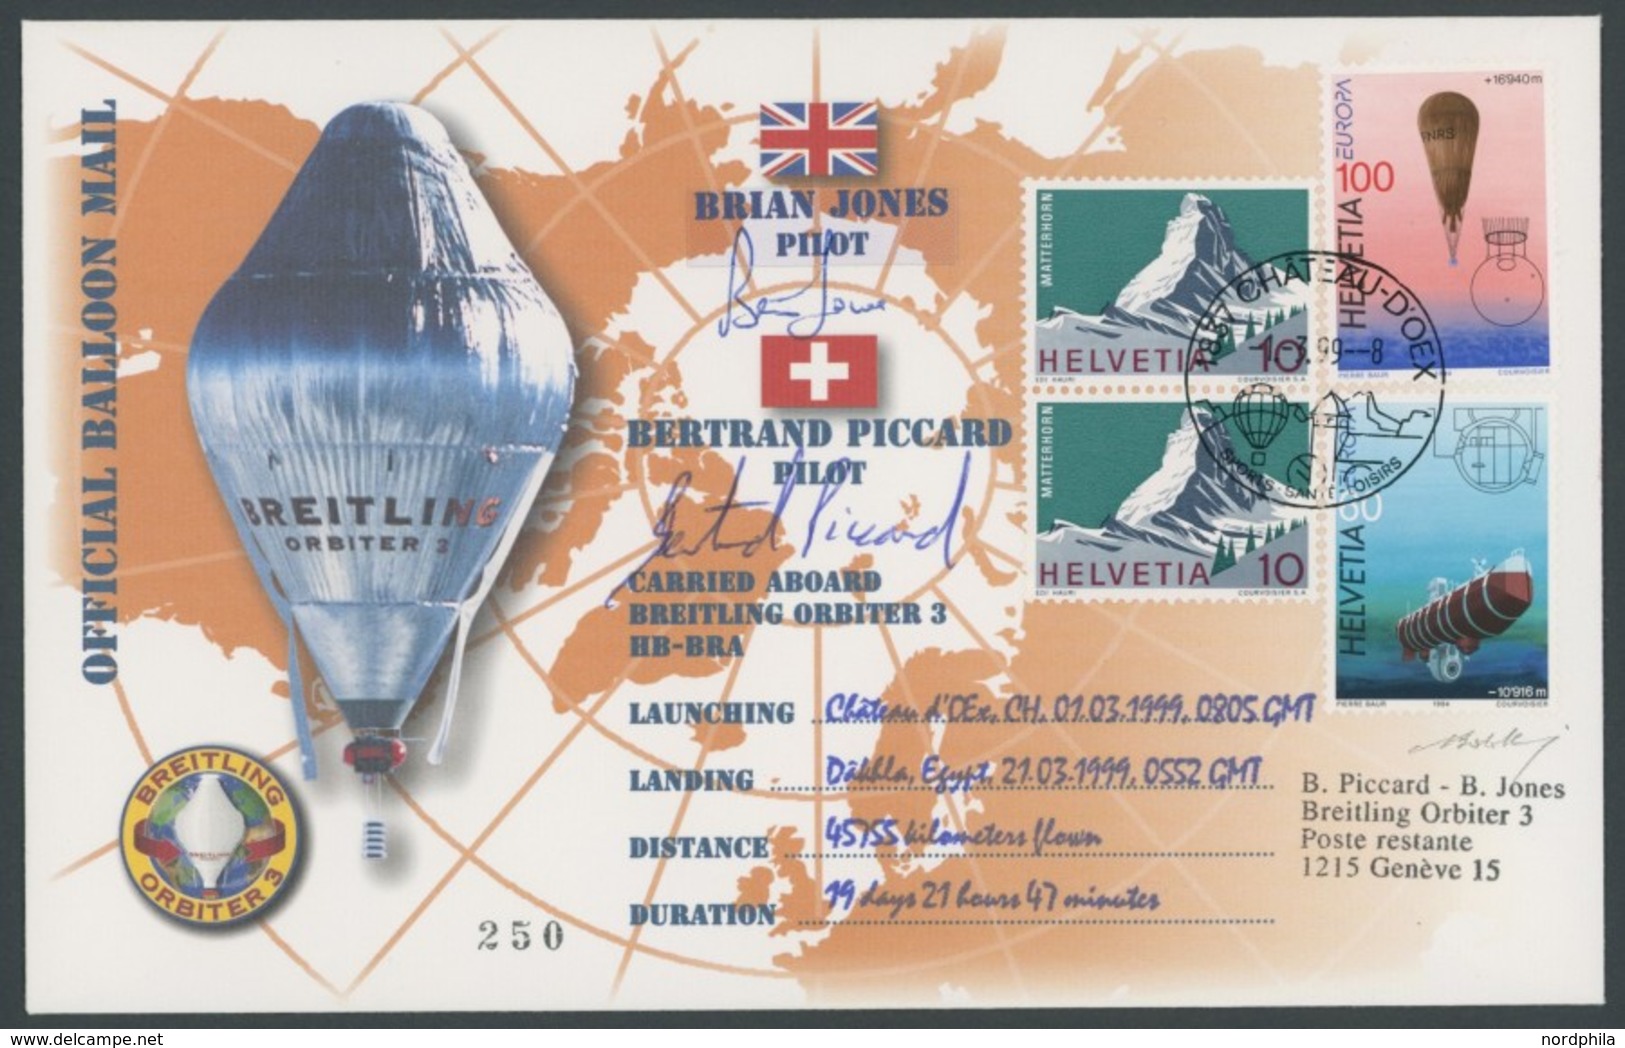 LUFTPOST 1999, Orbiter 3 - Weltrund Ballon Rekordflug, 45755 Km In 19 Tagen, Offizielle Ballon Mail Mit Unterschriften D - Primeros Vuelos